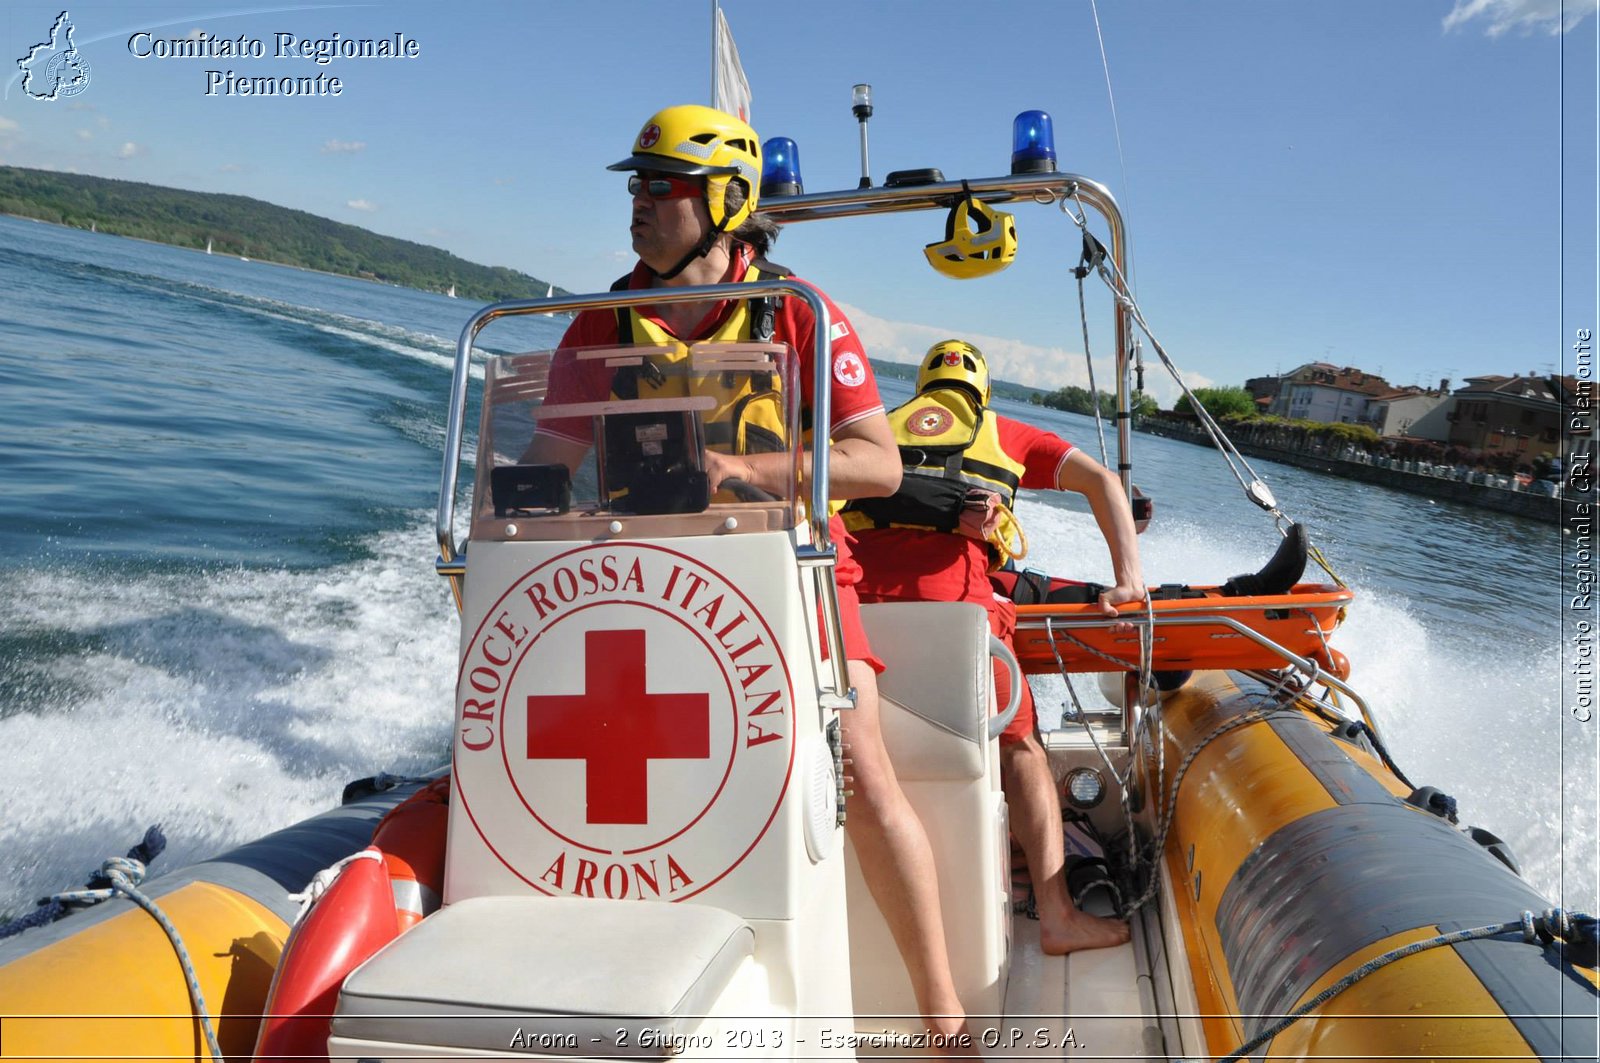 Arona - 2 Giugno 2013 - Esercitazione O.P.S.A. - Croce Rossa Italiana - Comitato Regionale del Piemonte